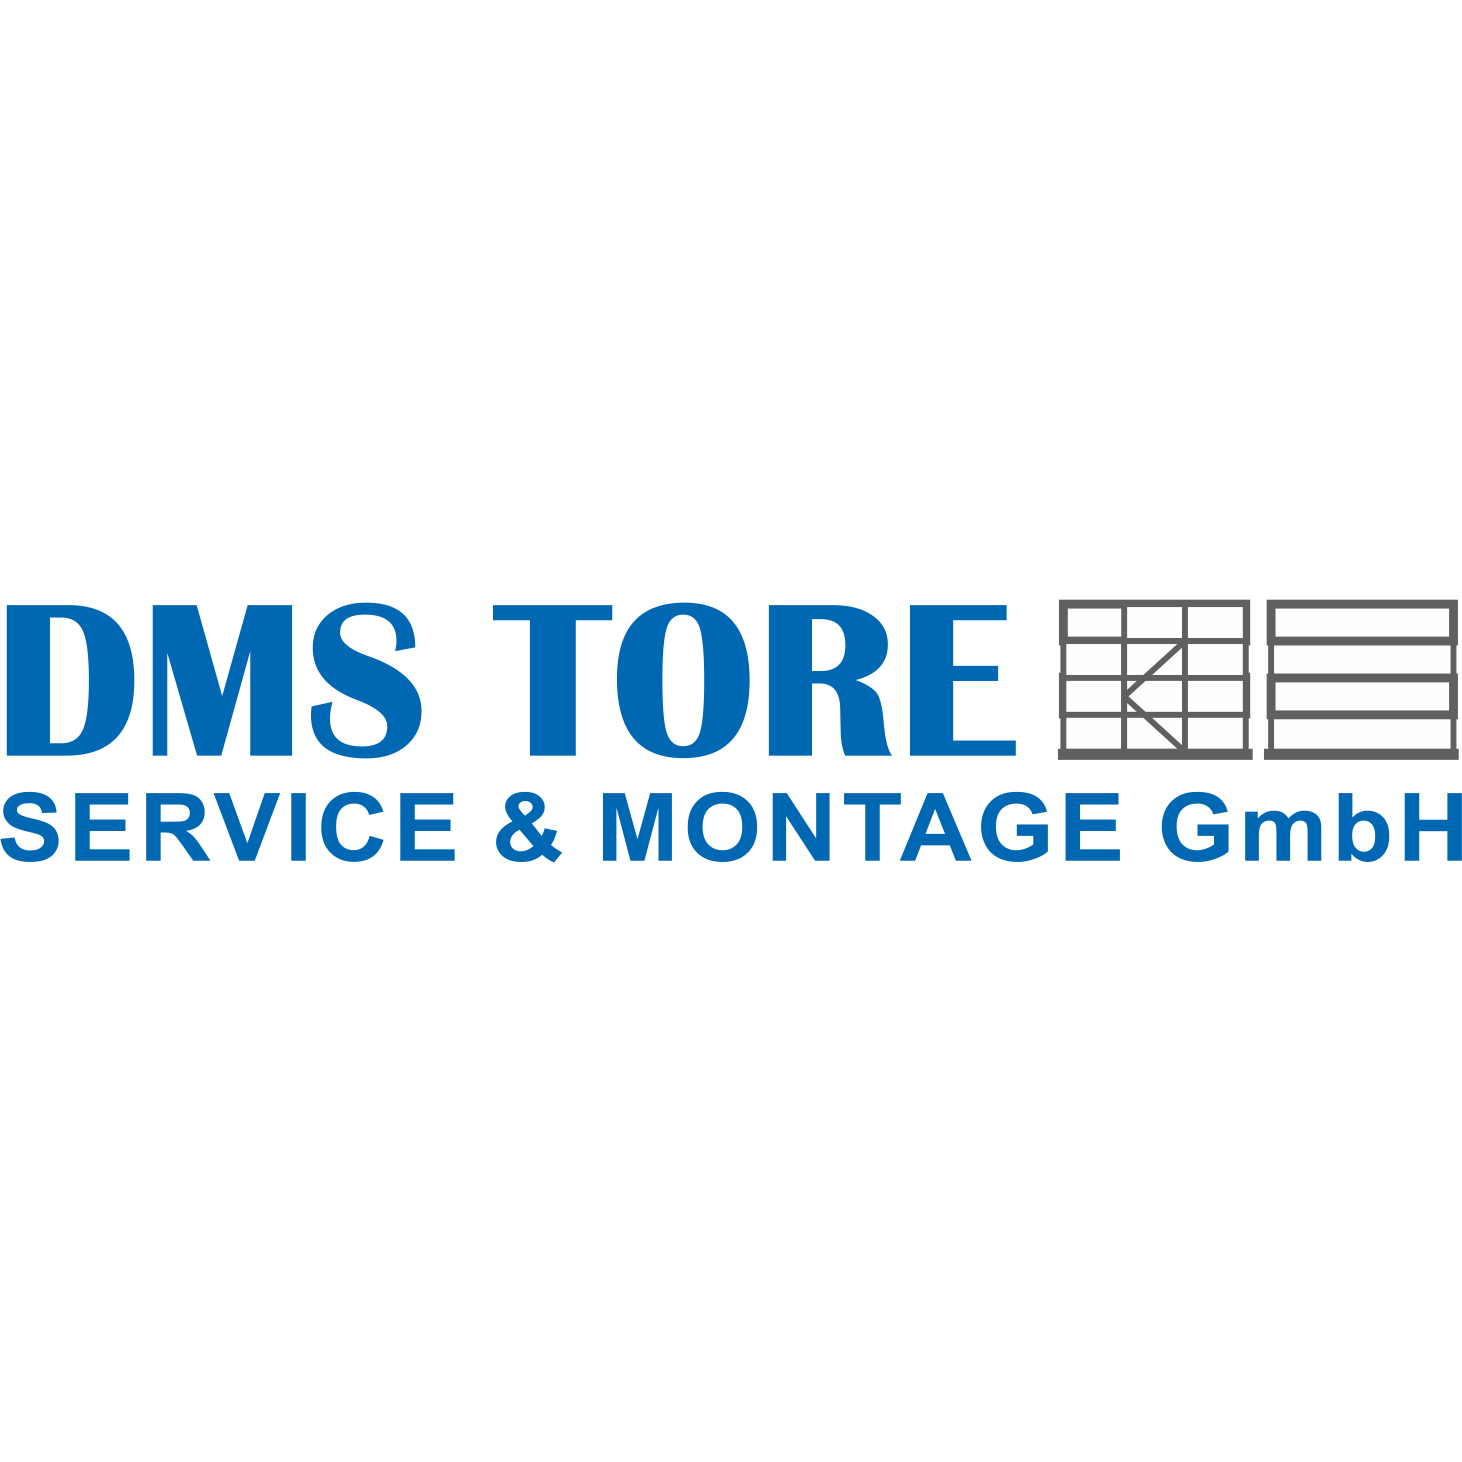 DMS - Tore Service & Montage GmbH Logo